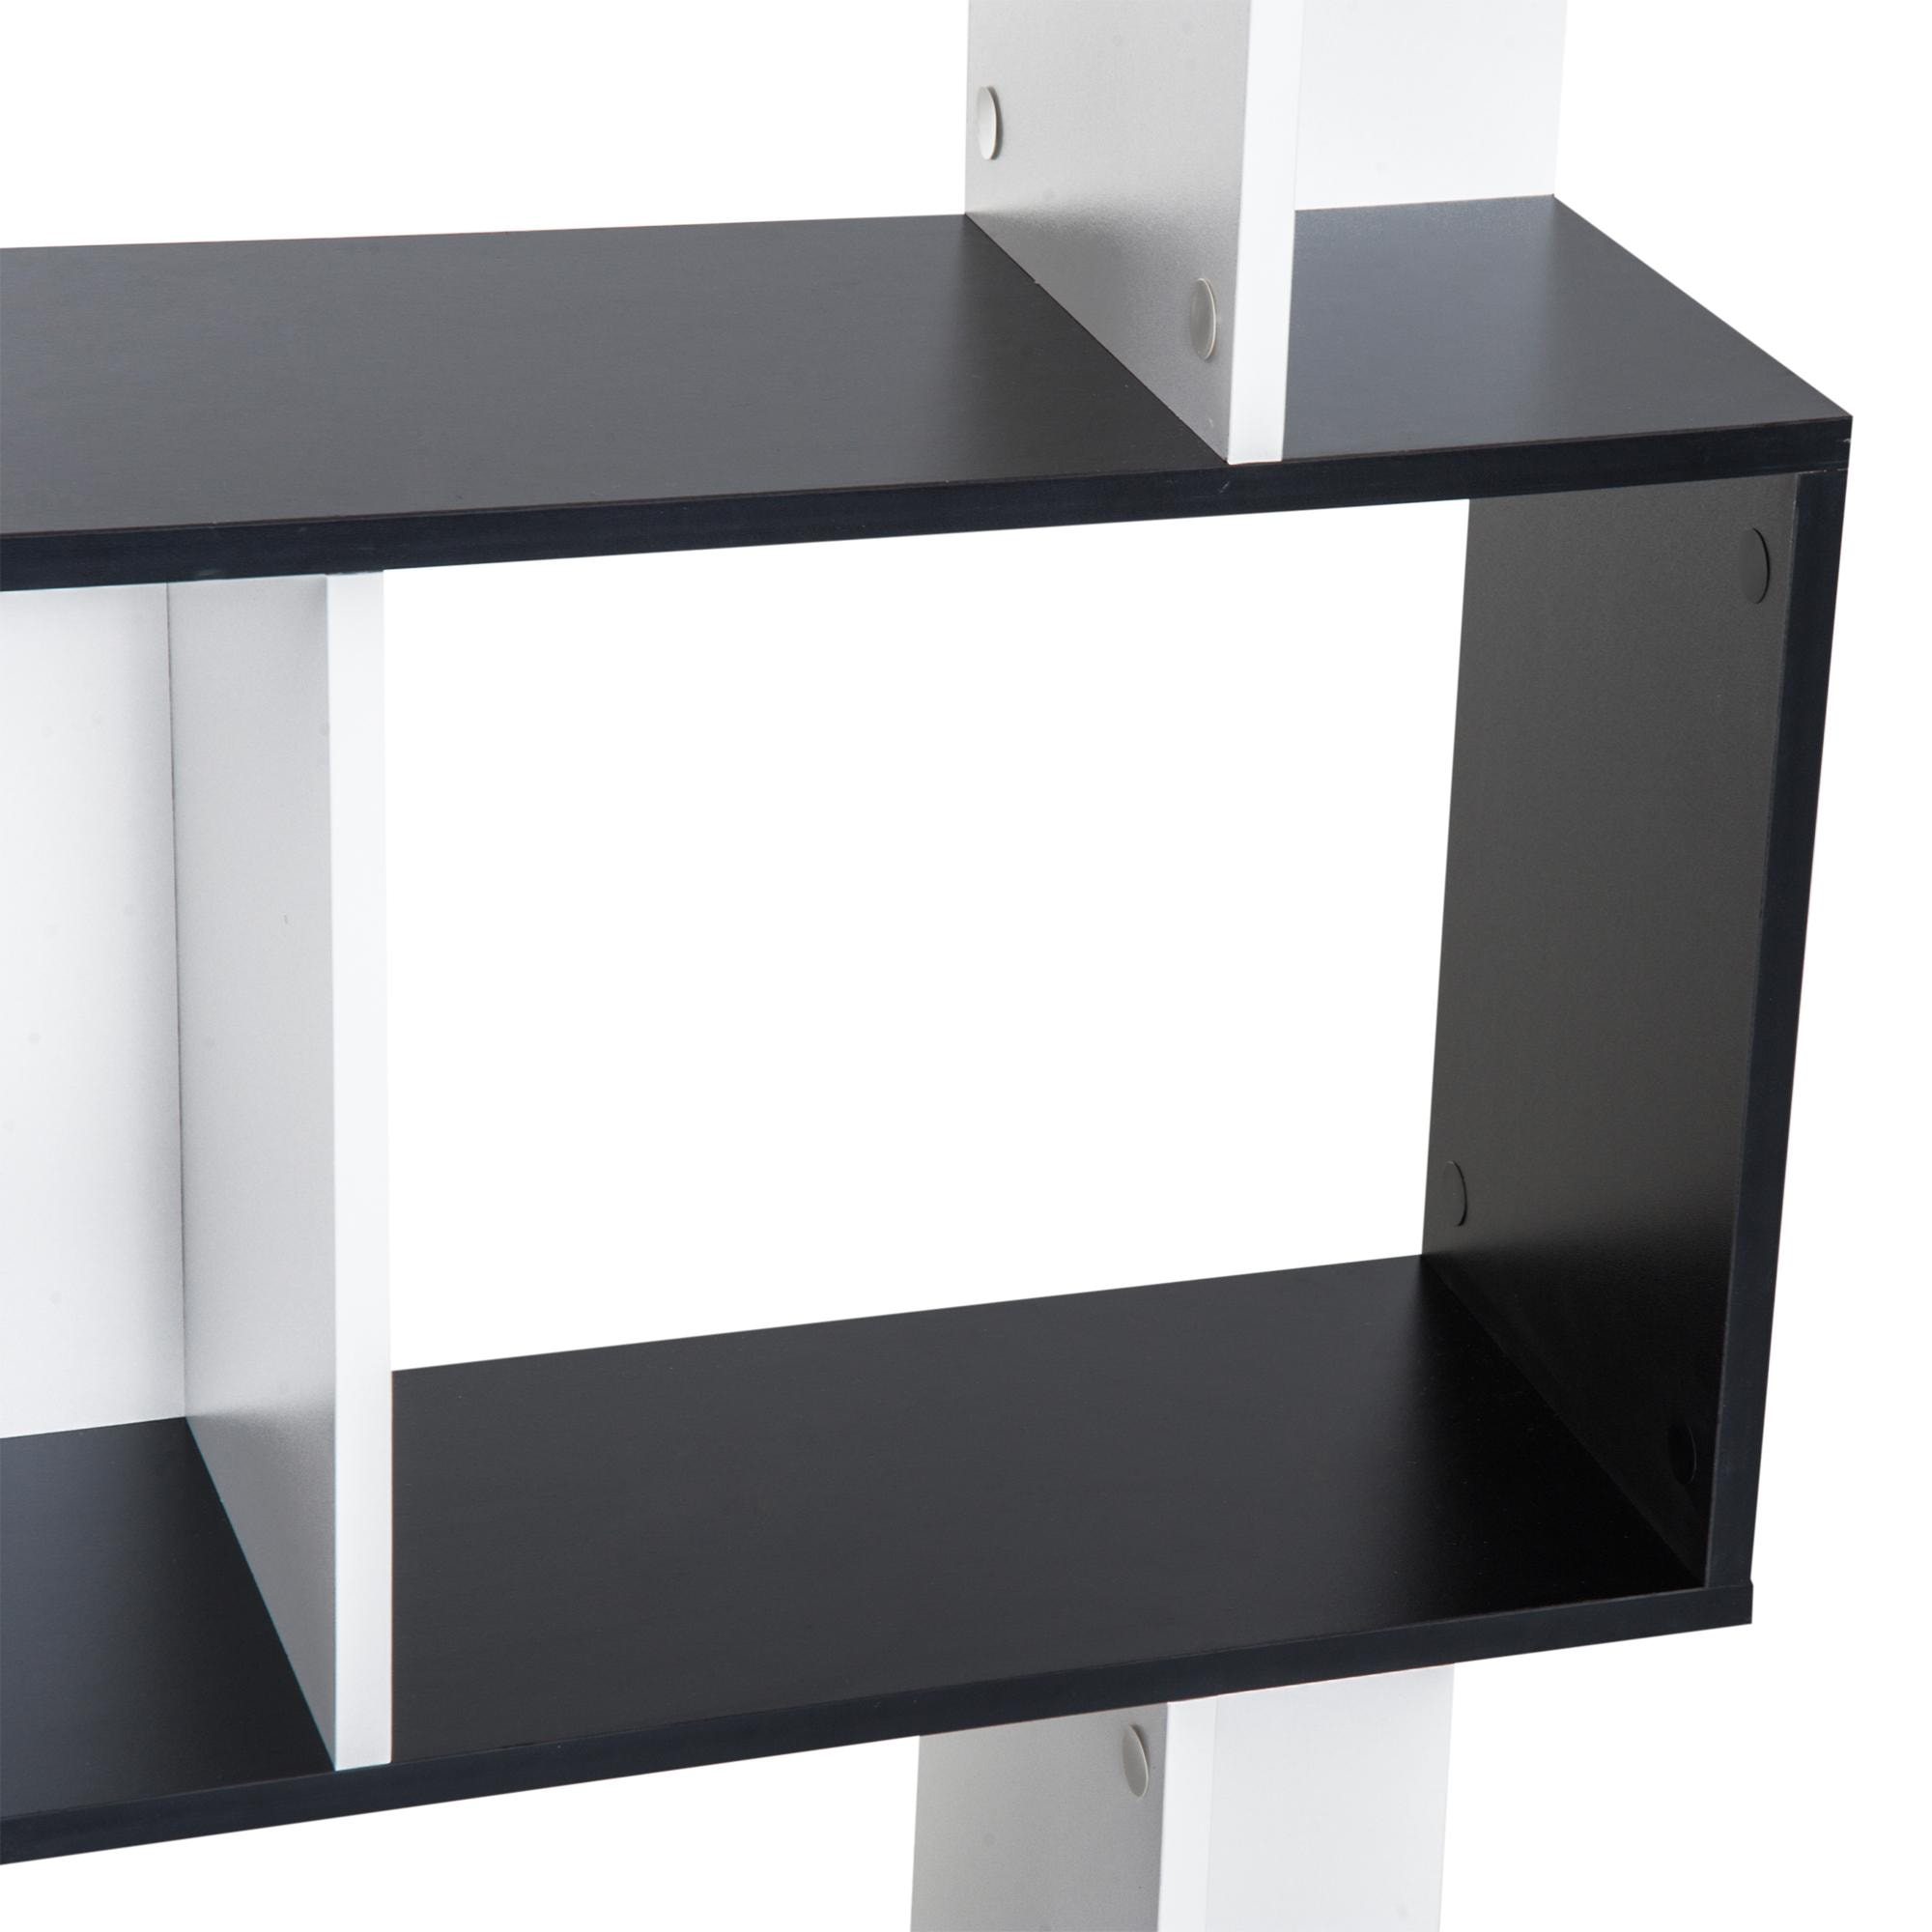 Bibliothèque étagère meuble de rangement design contemporain en S 5 étagères 60L x 24l x 185H cm noir blanc